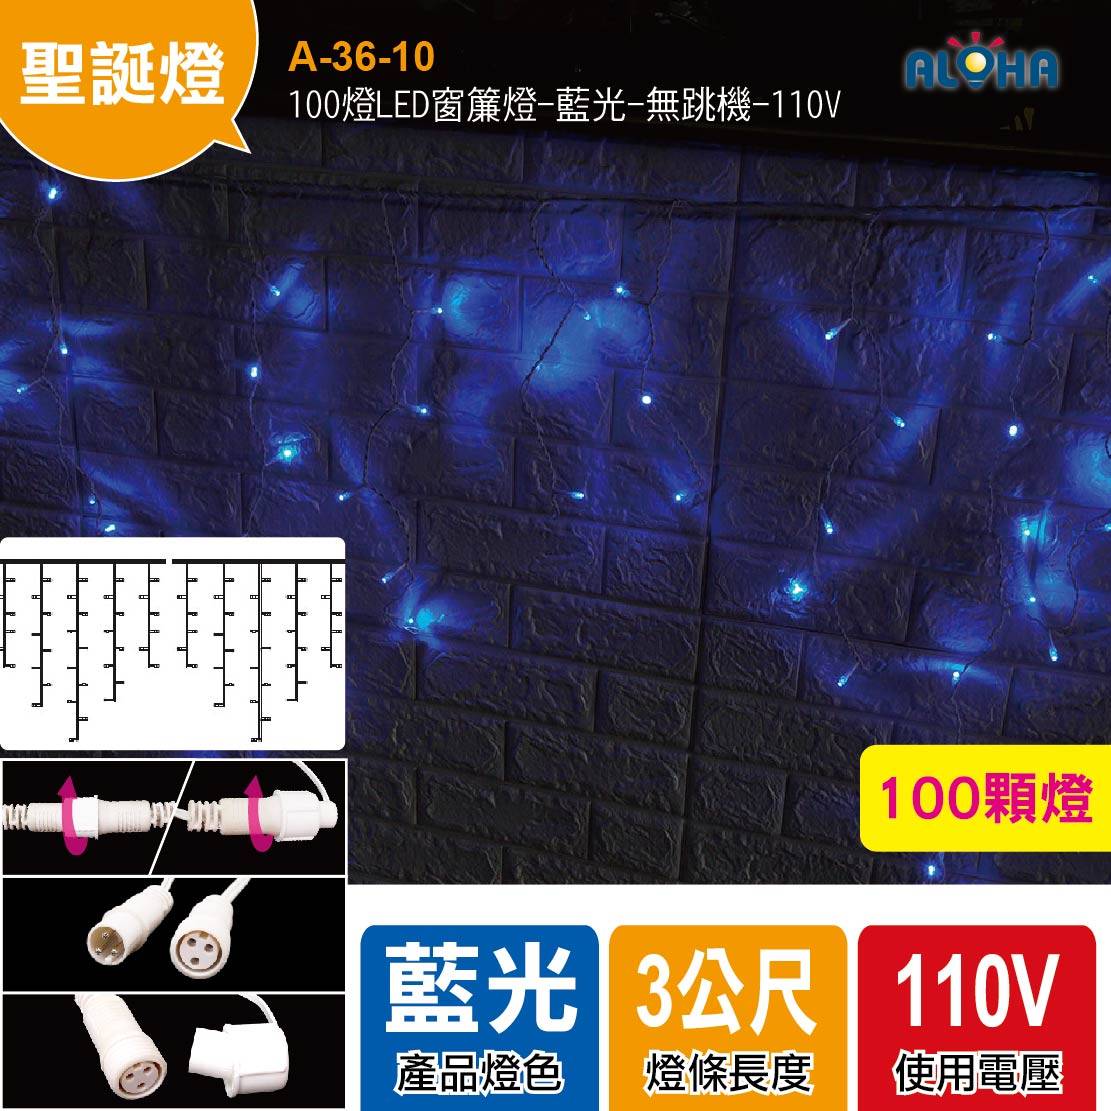 100燈LED窗簾燈-藍光-無跳機-110V